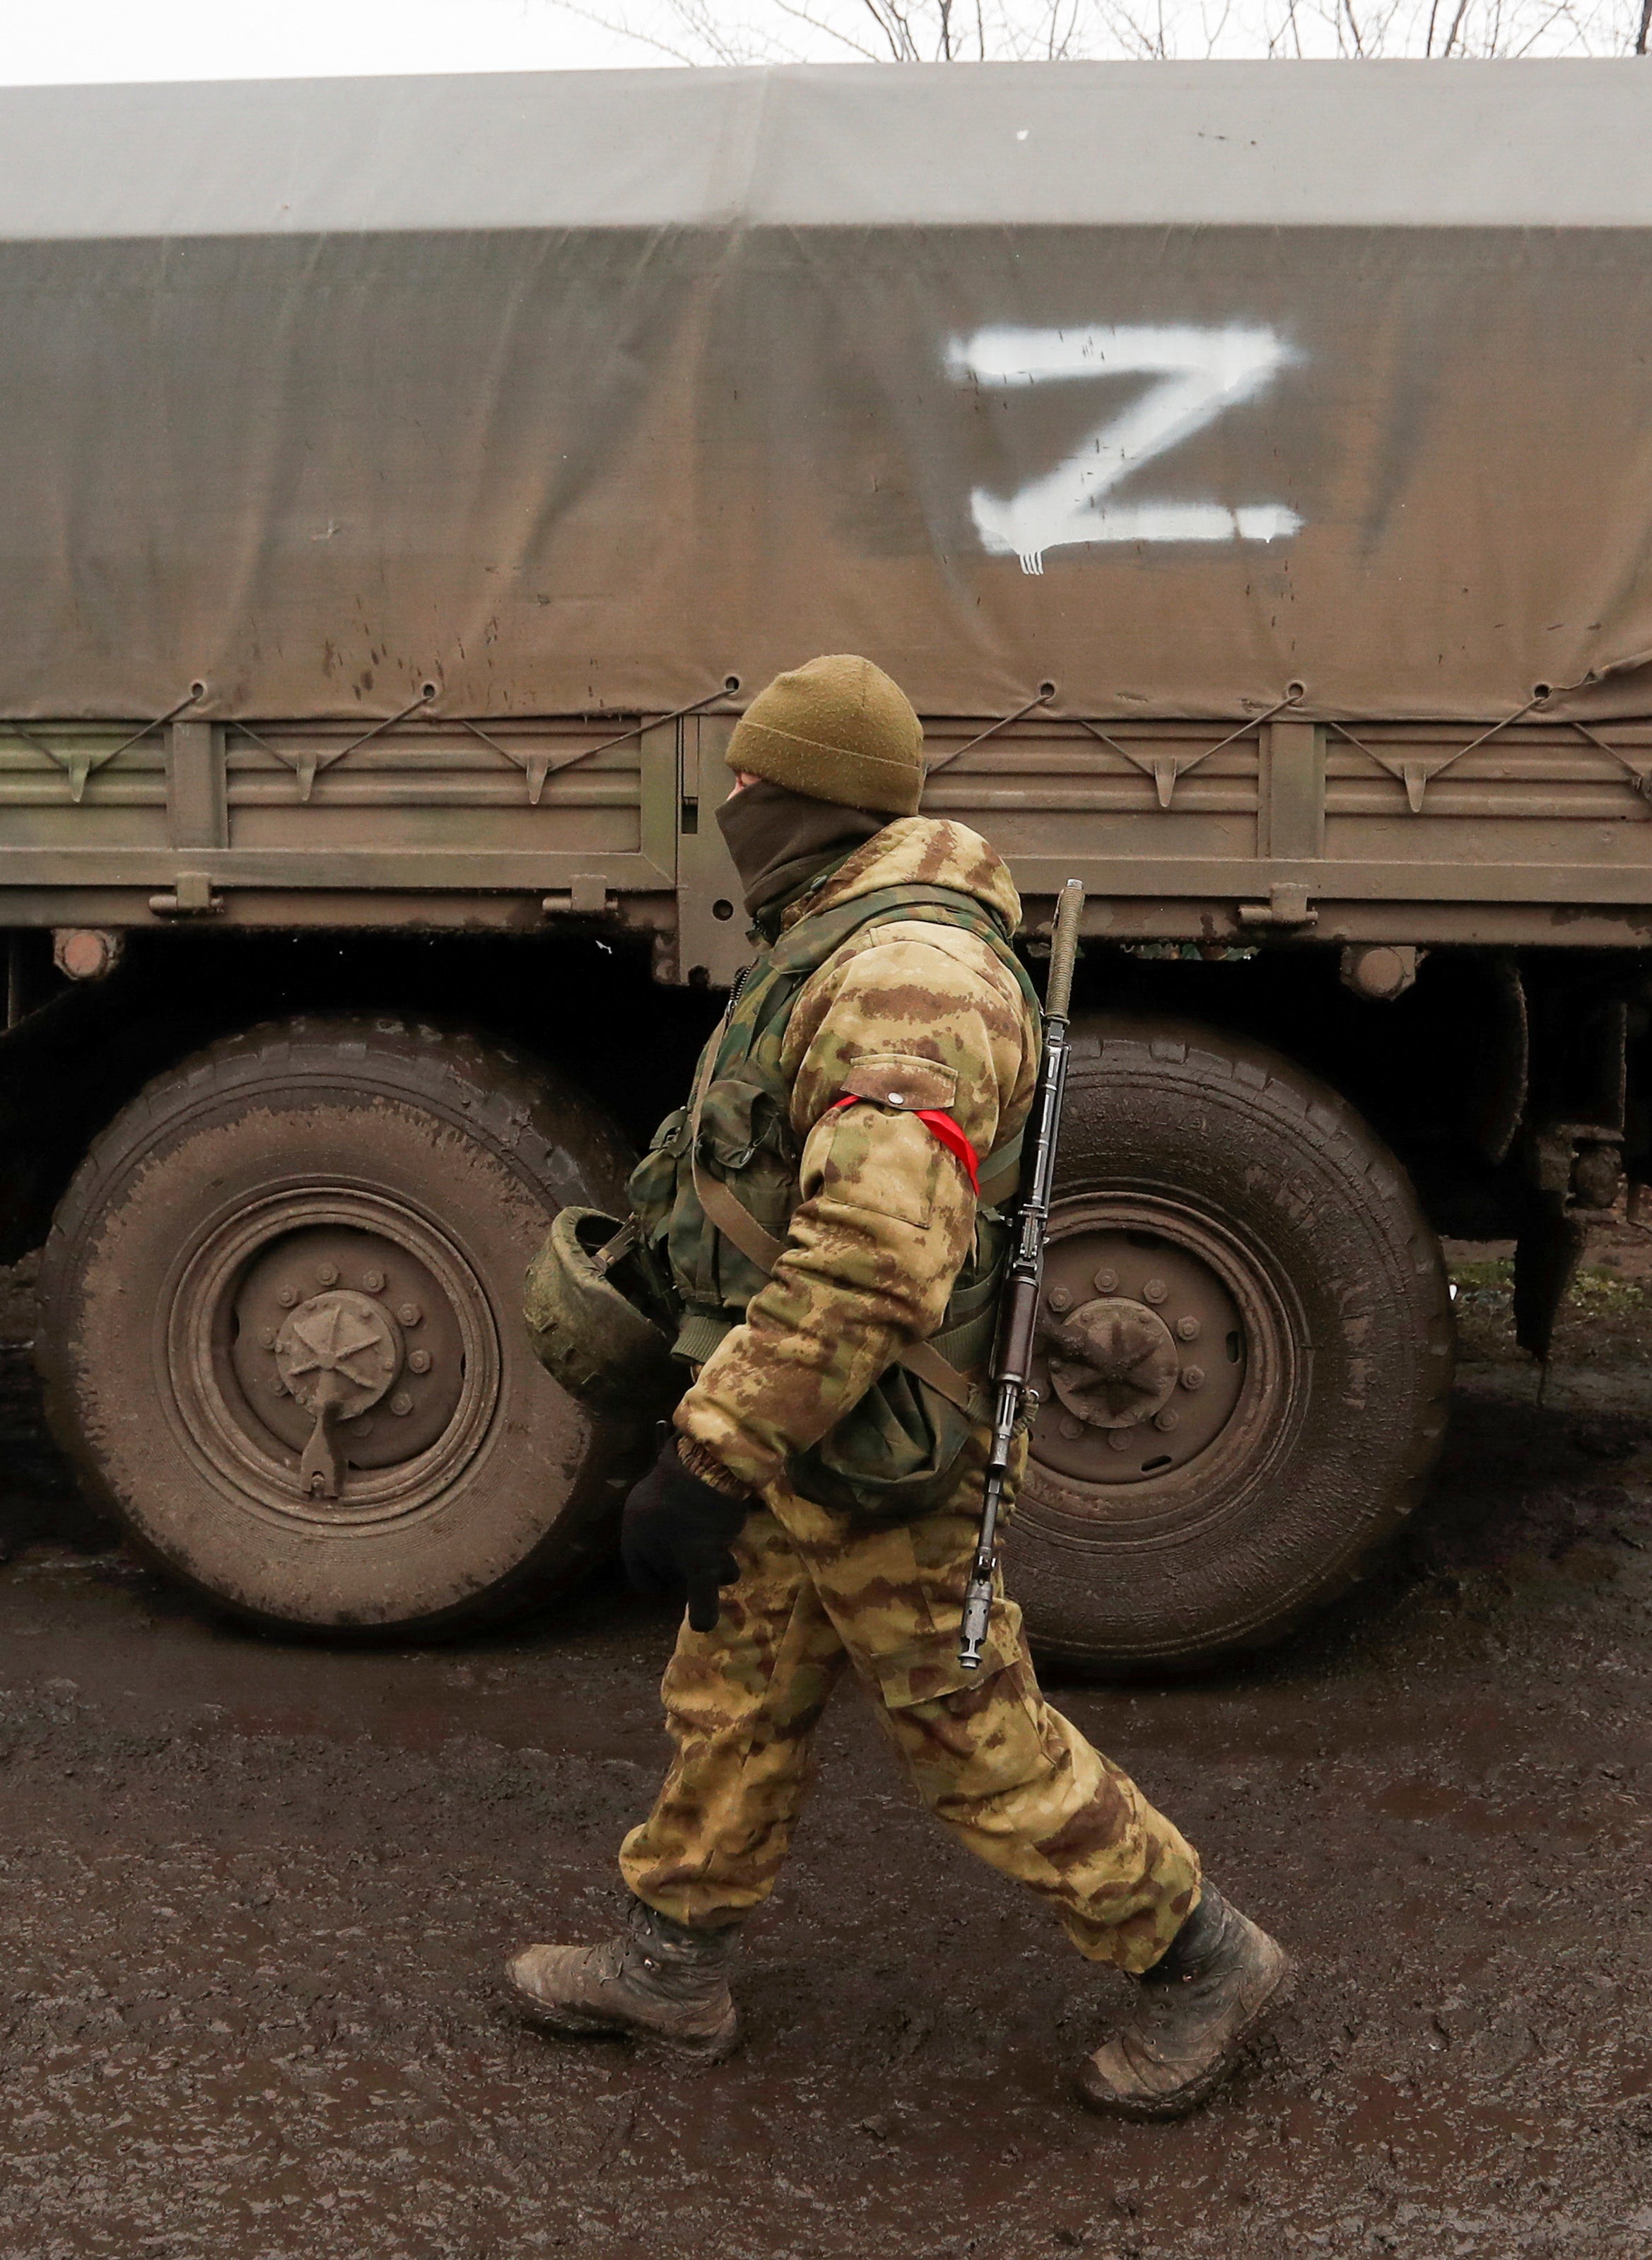 Un miembro de las tropas prorrusas con un uniforme sin insignias pasa junto a un camión con el símbolo “Z” pintado en su lateral en el asentamiento de Rybinskoye, controlado por los separatistas, durante el conflicto entre Ucrania y Rusia en la región de Donetsk, Ucrania, el 5 de marzo